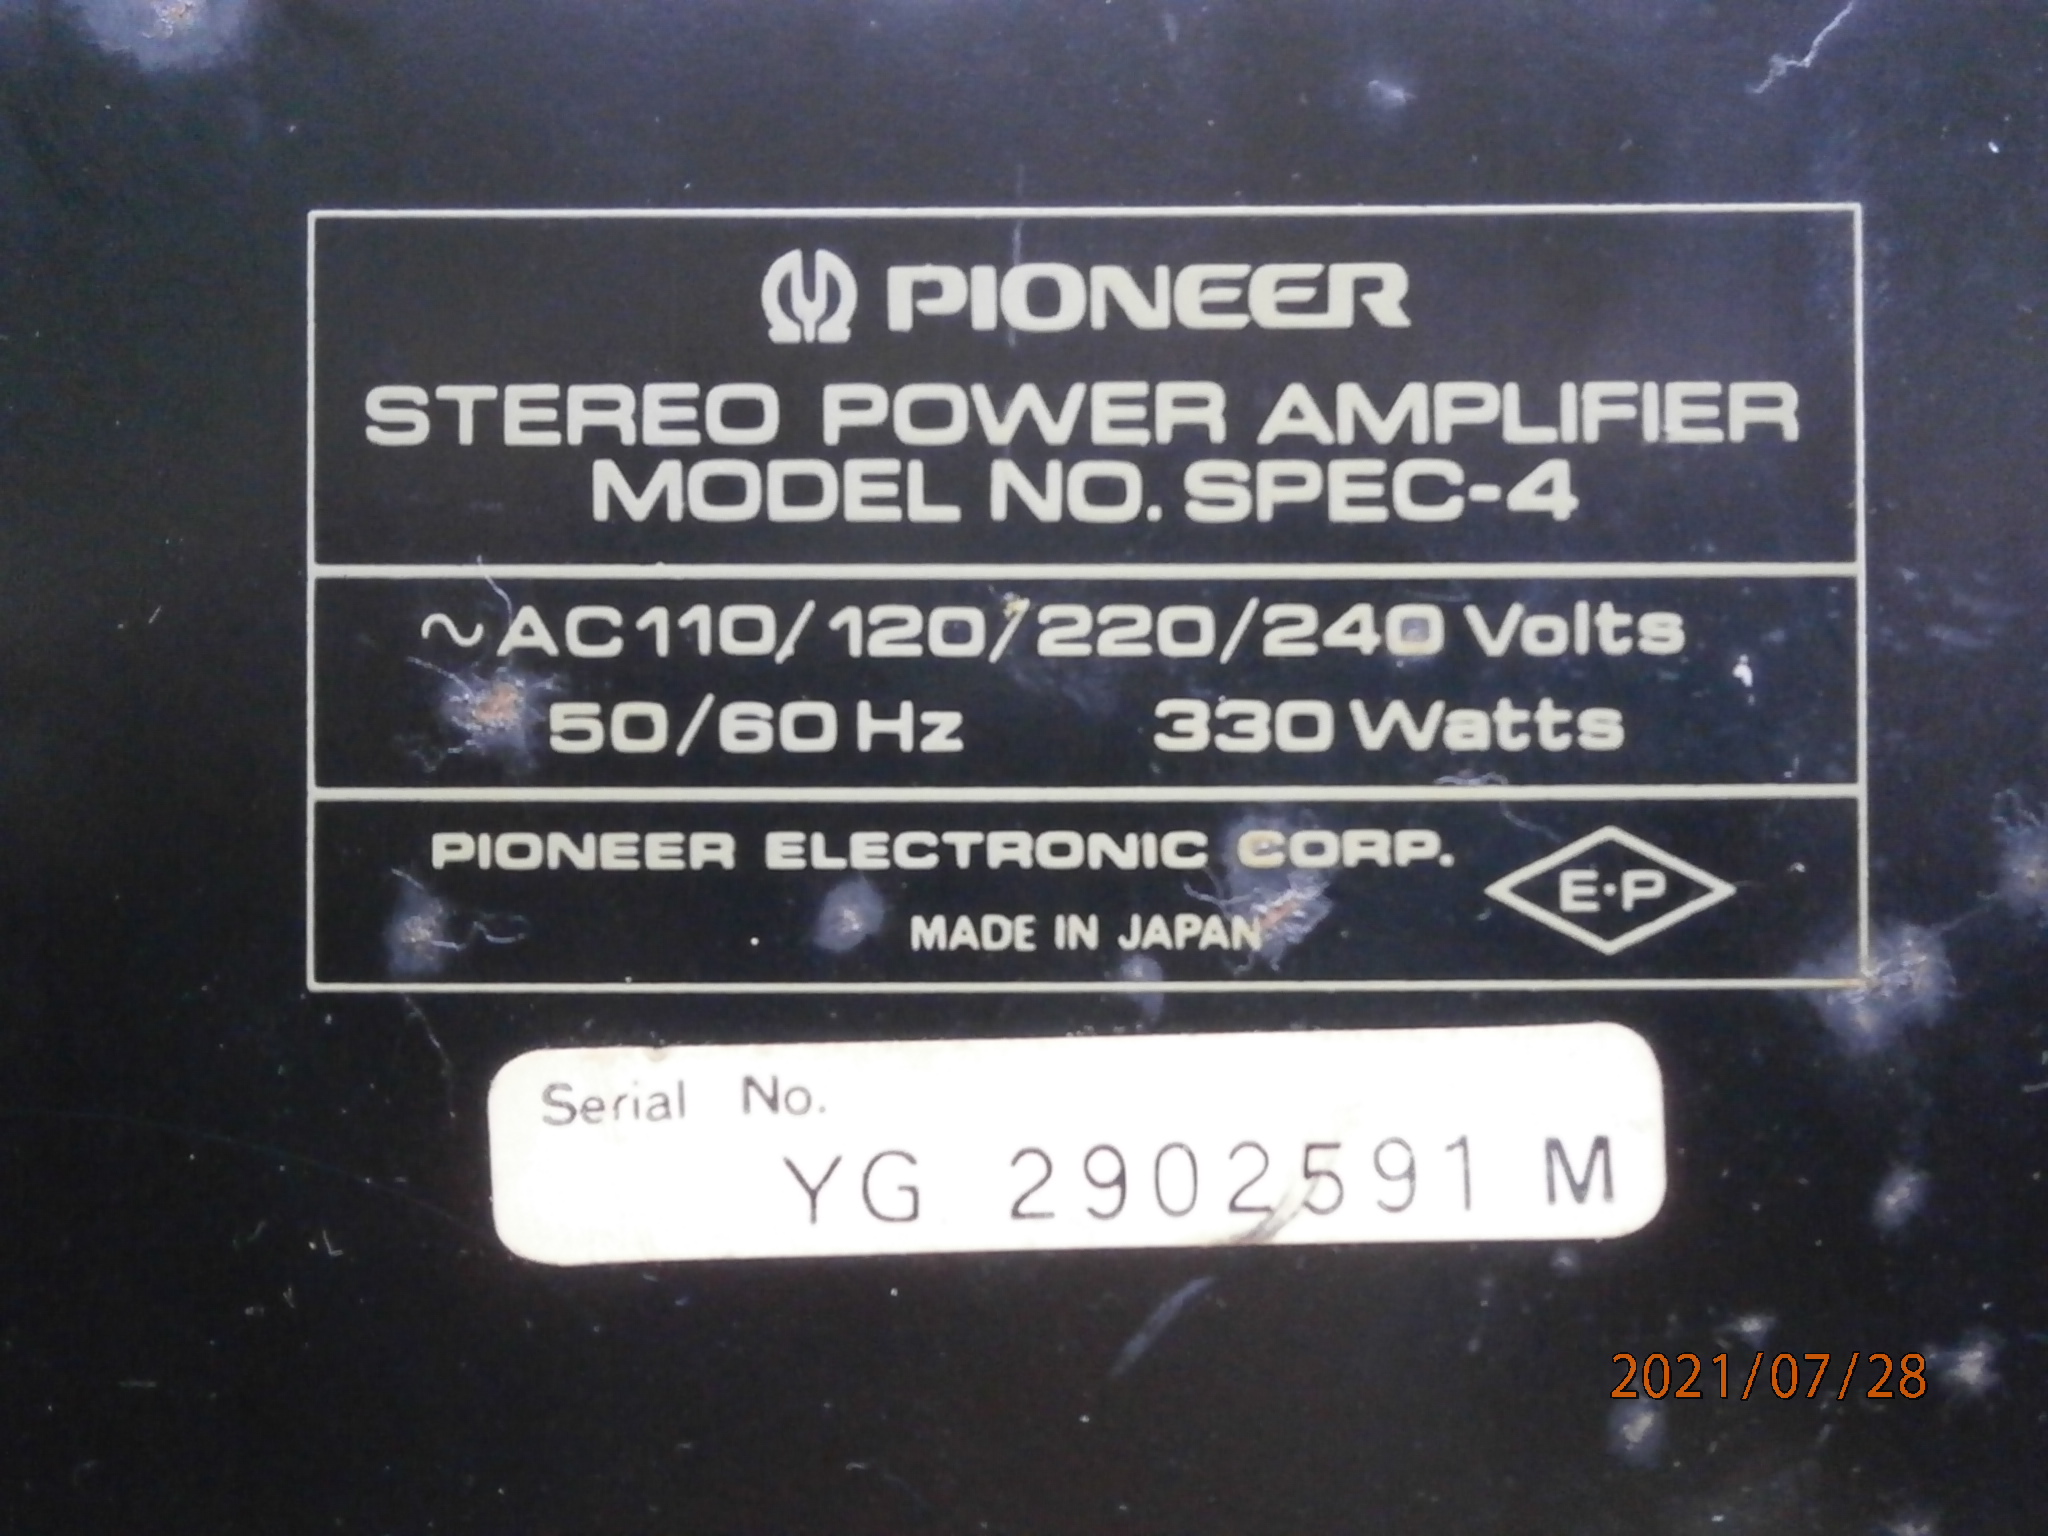 SPEC-4 power amp